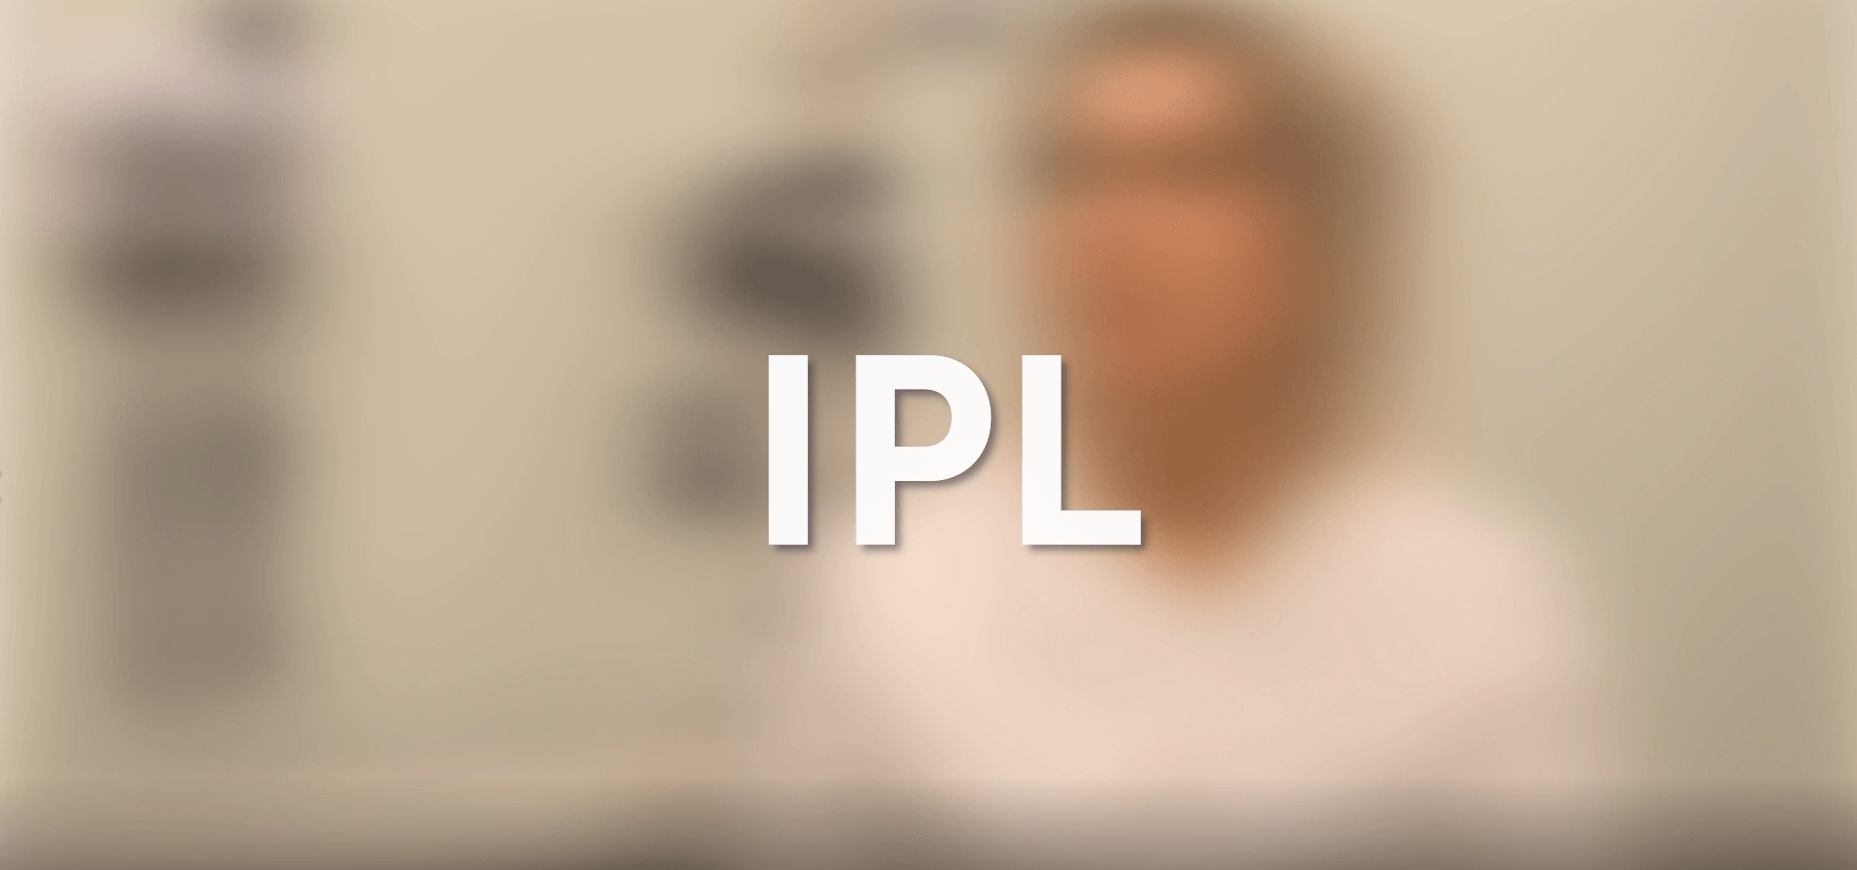 Vídeo IPL